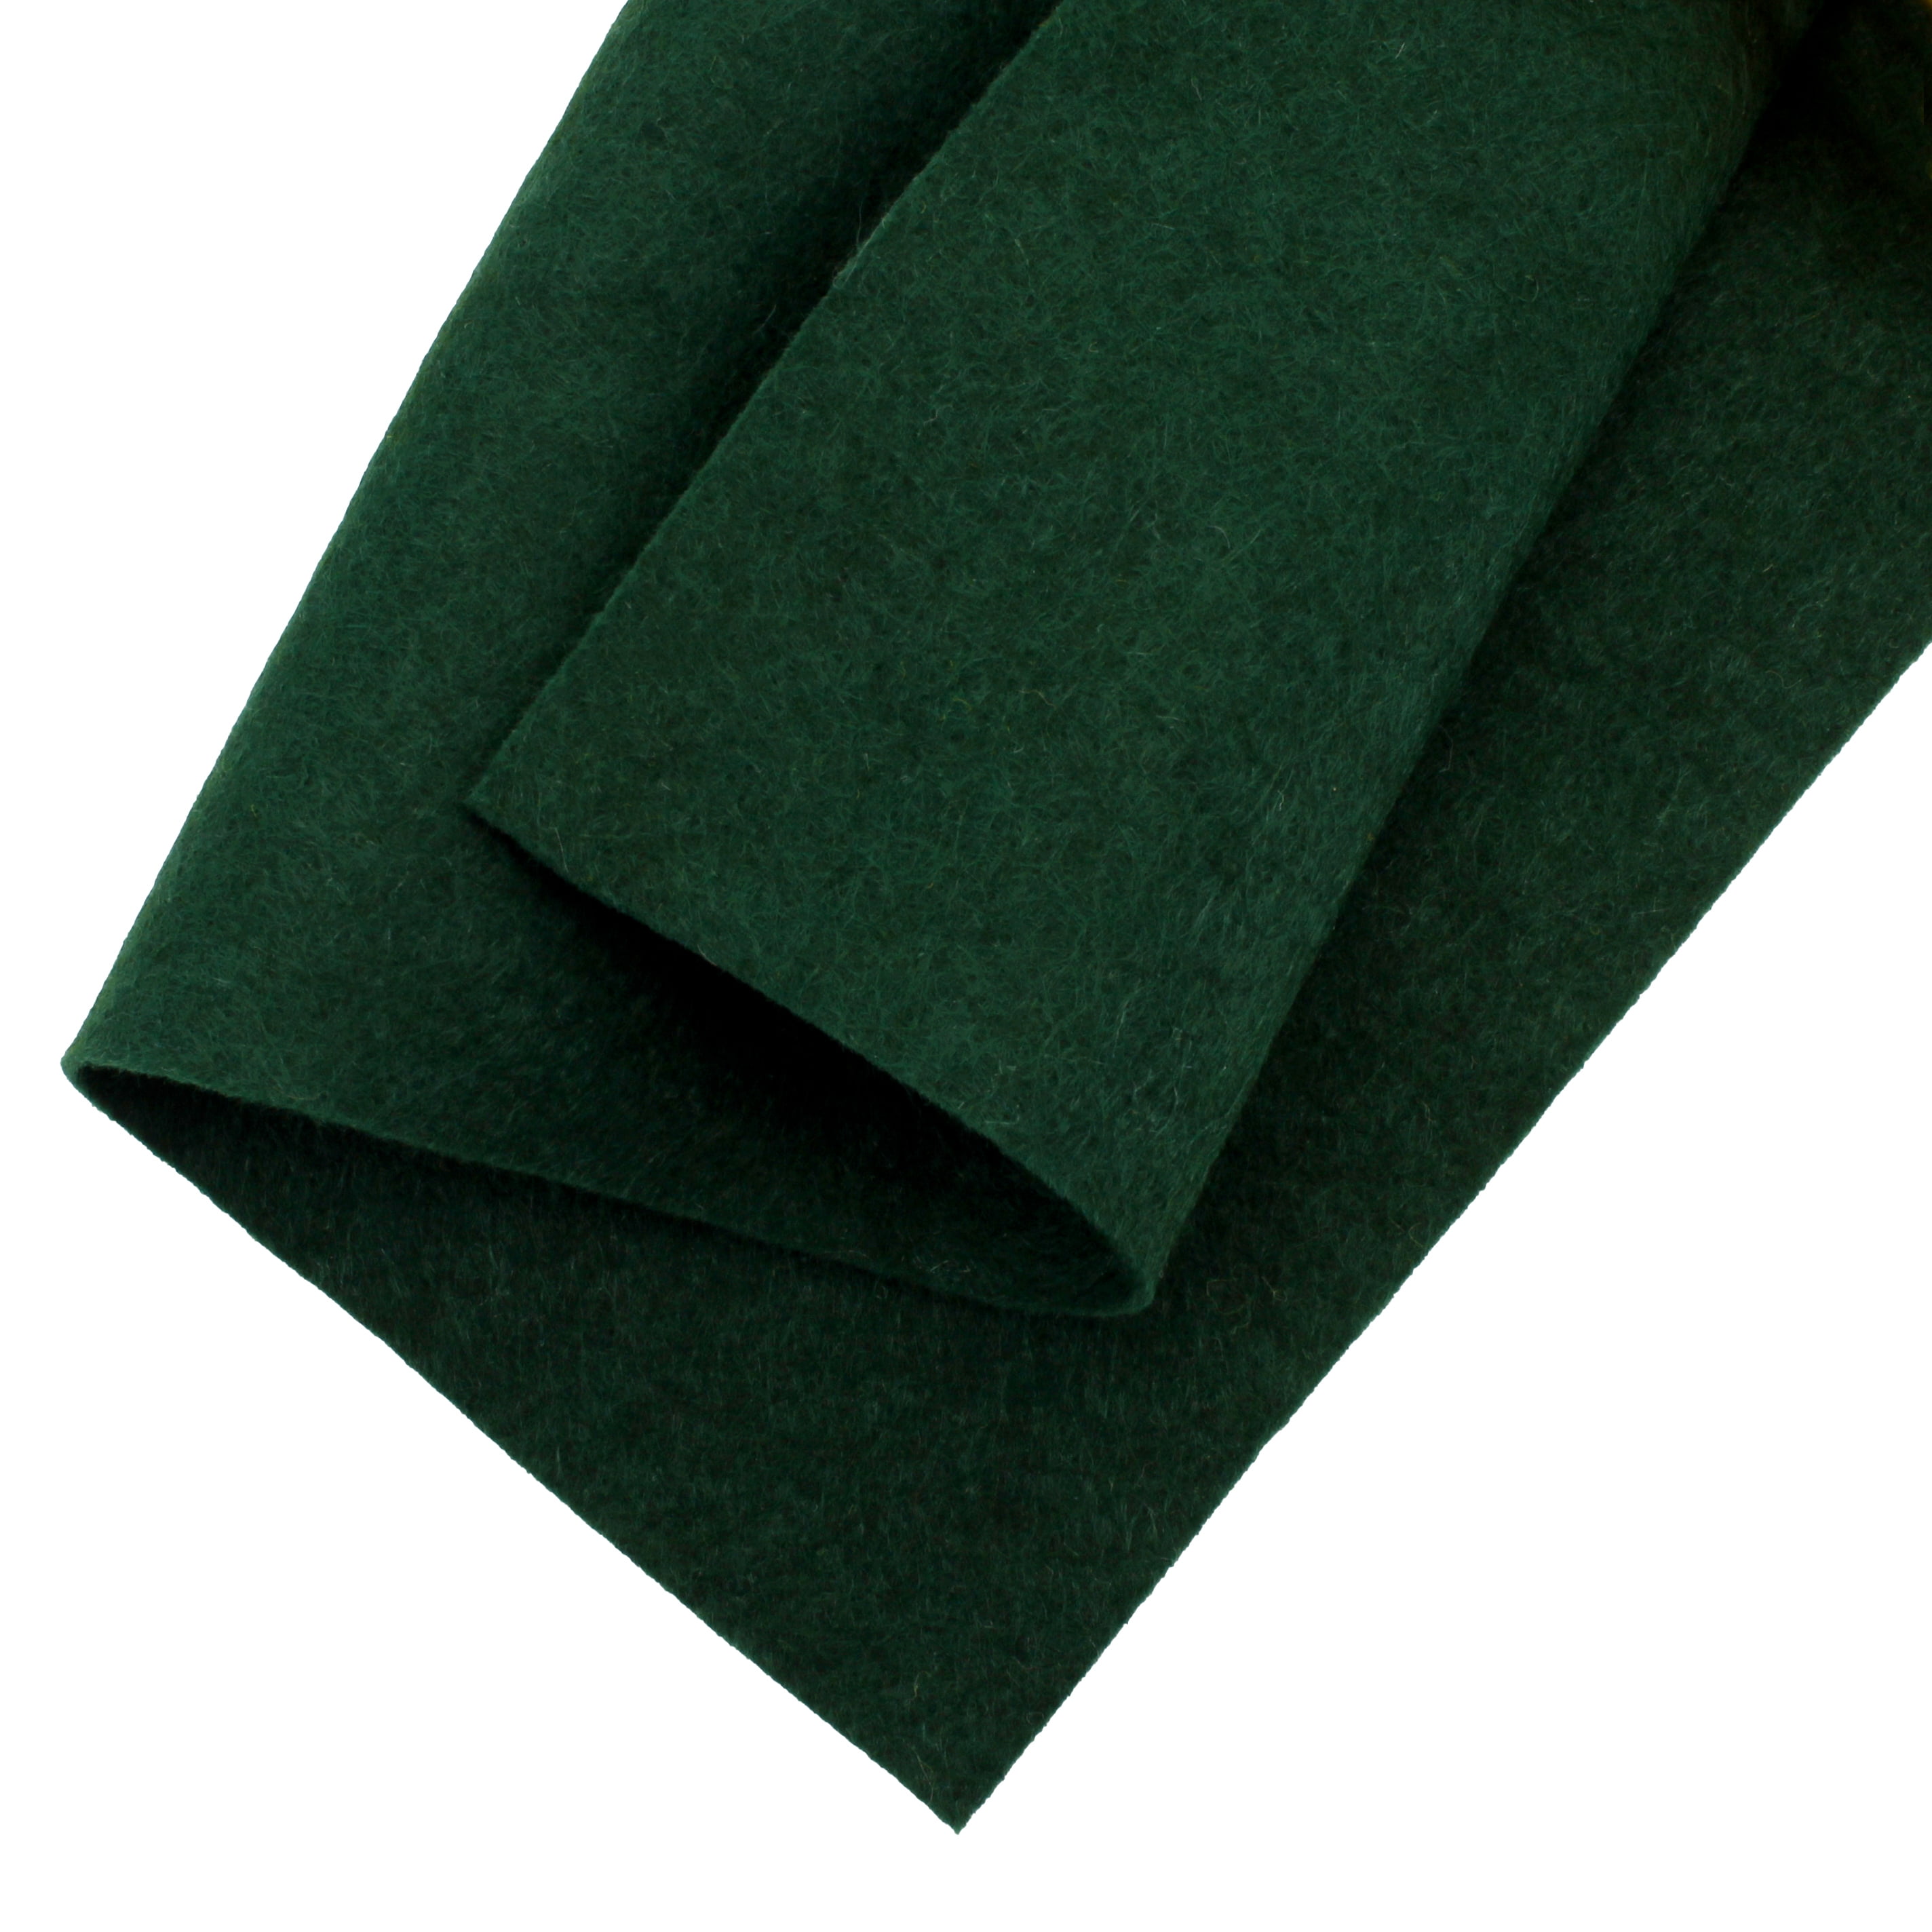 Green Felt Collection 12 Sheets of Green Wool Blend Felt Felt